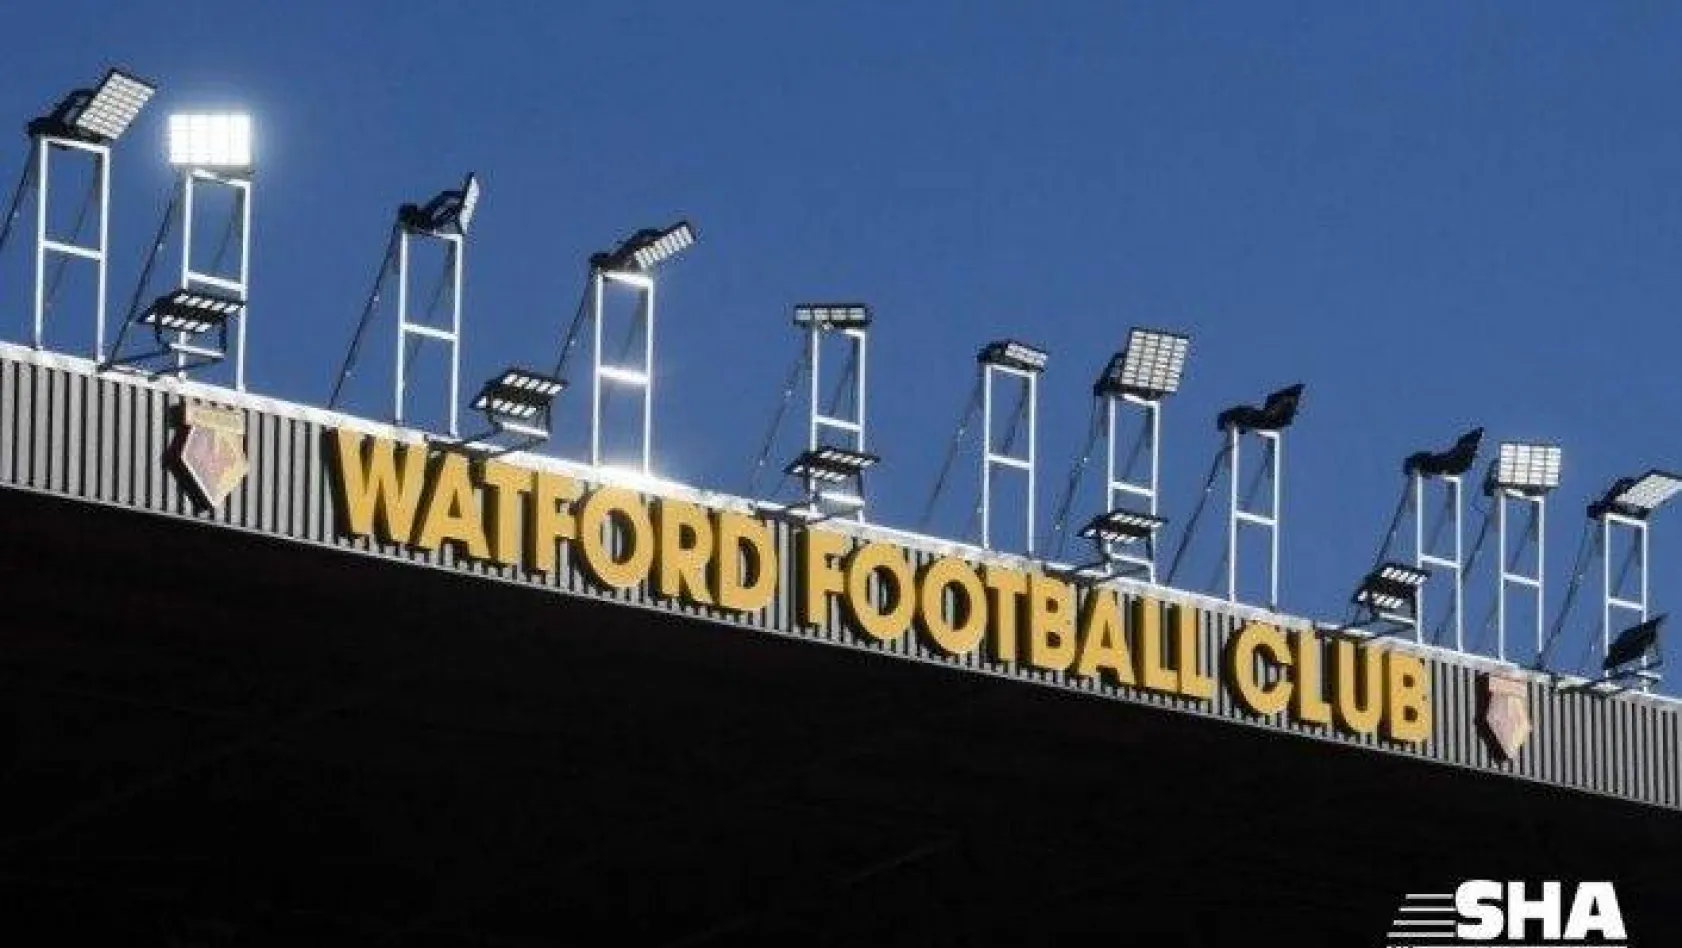 Watford'da 1'i futbolcu toplam 3 kişide korona virüs çıktı